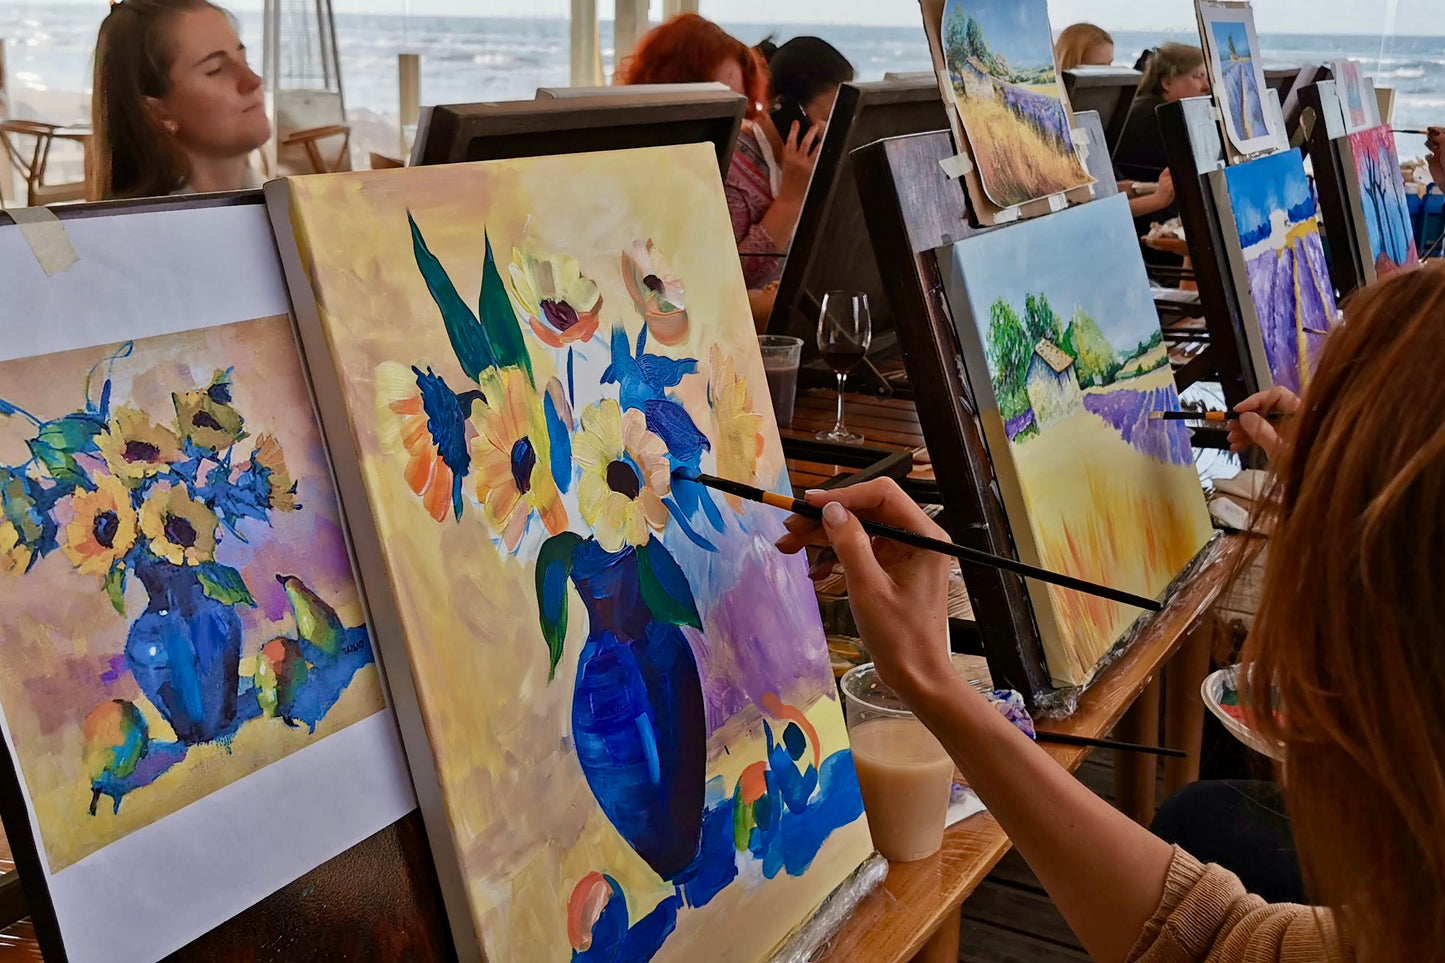 Vasaras glezniecības meistarklase Jūrmalā - X.O Beach Club. Pašu rokām radīta glezna 3 stundu laikā.